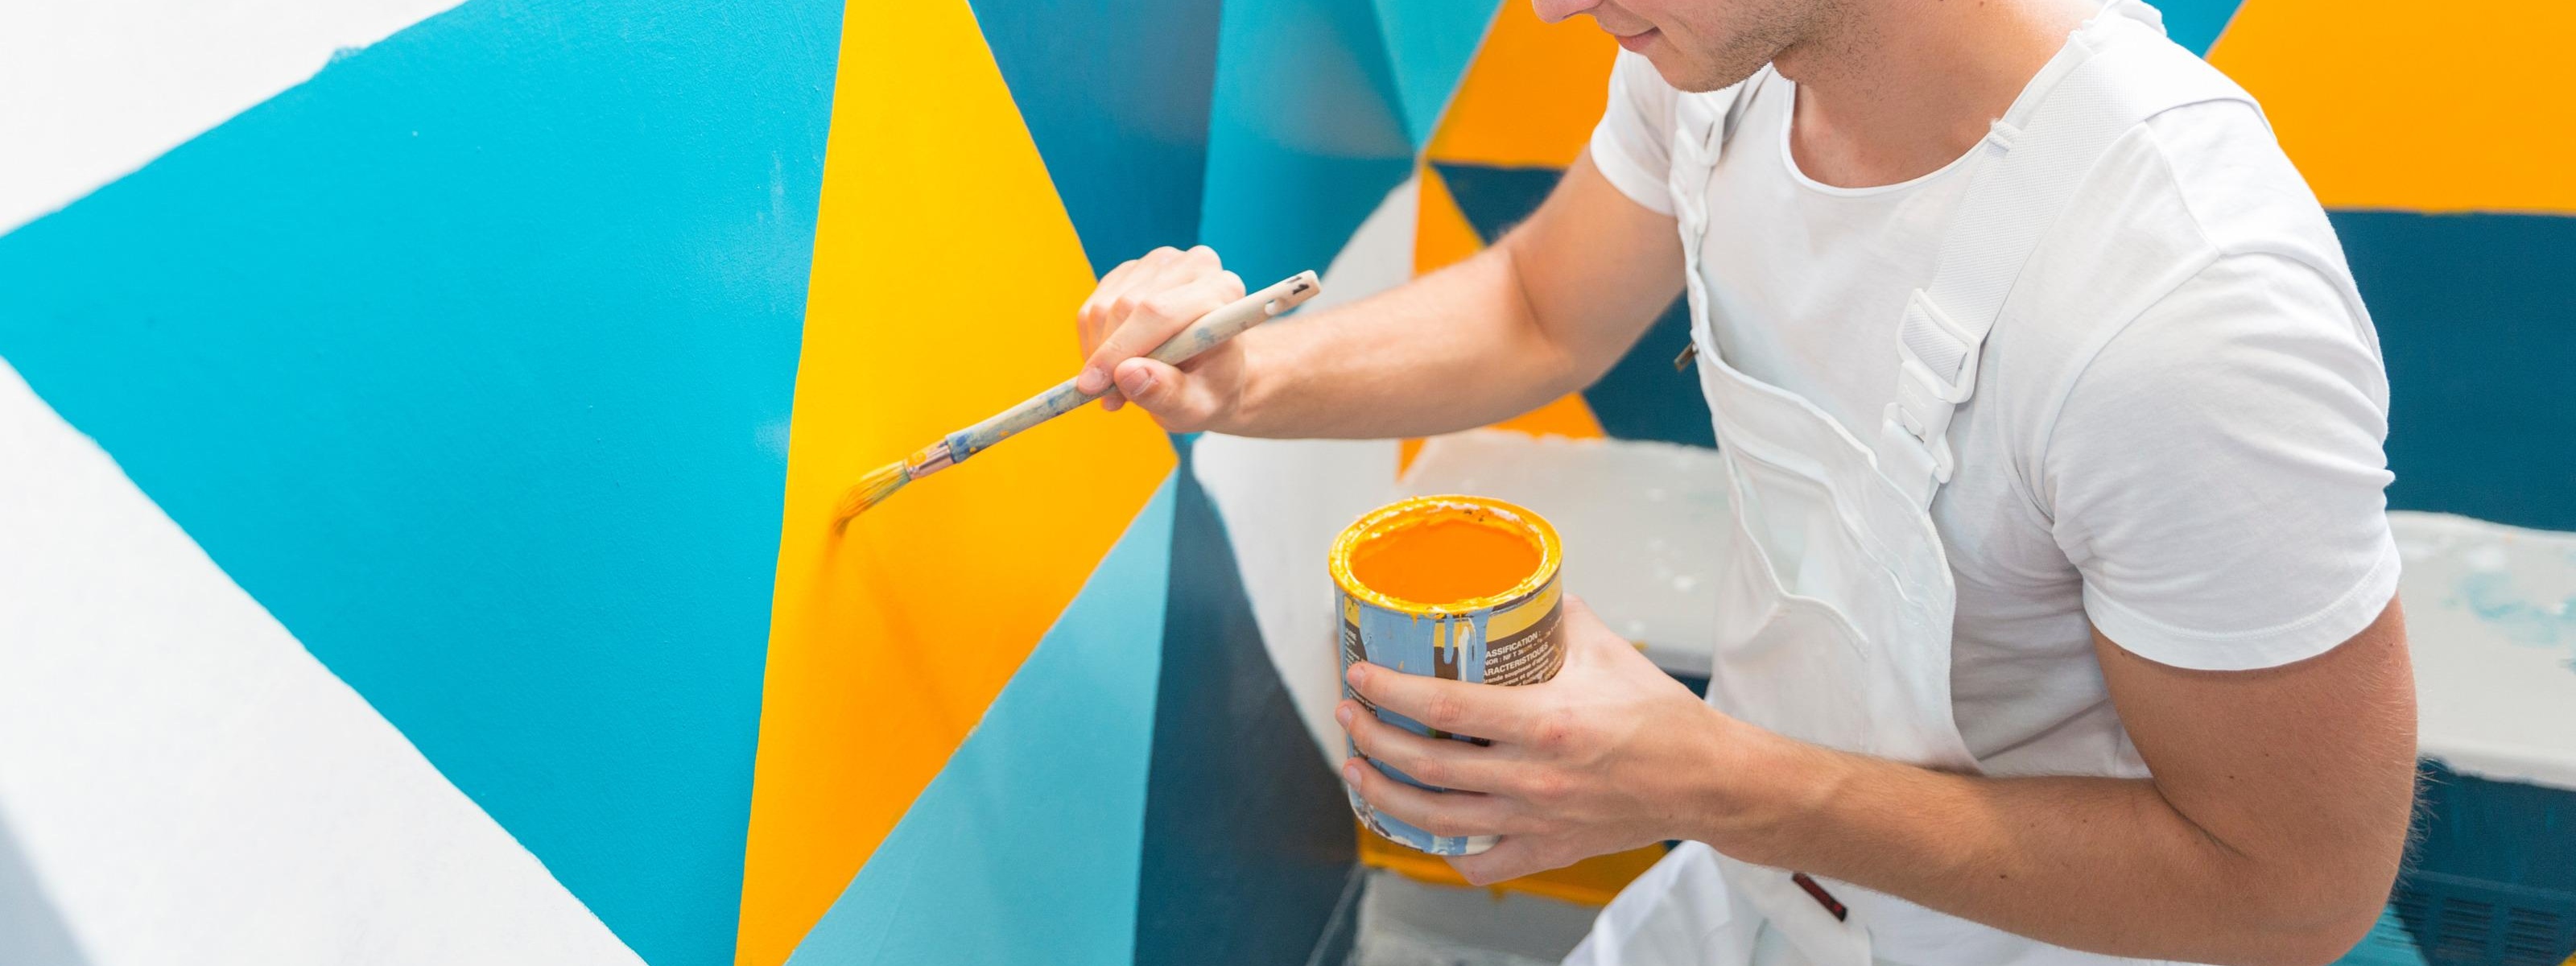 Person in weißem Arbeitsgewand streicht gelbe Farbe an Wand, die mit blauen, gelben und türkisen Dreiecken gemustert ist